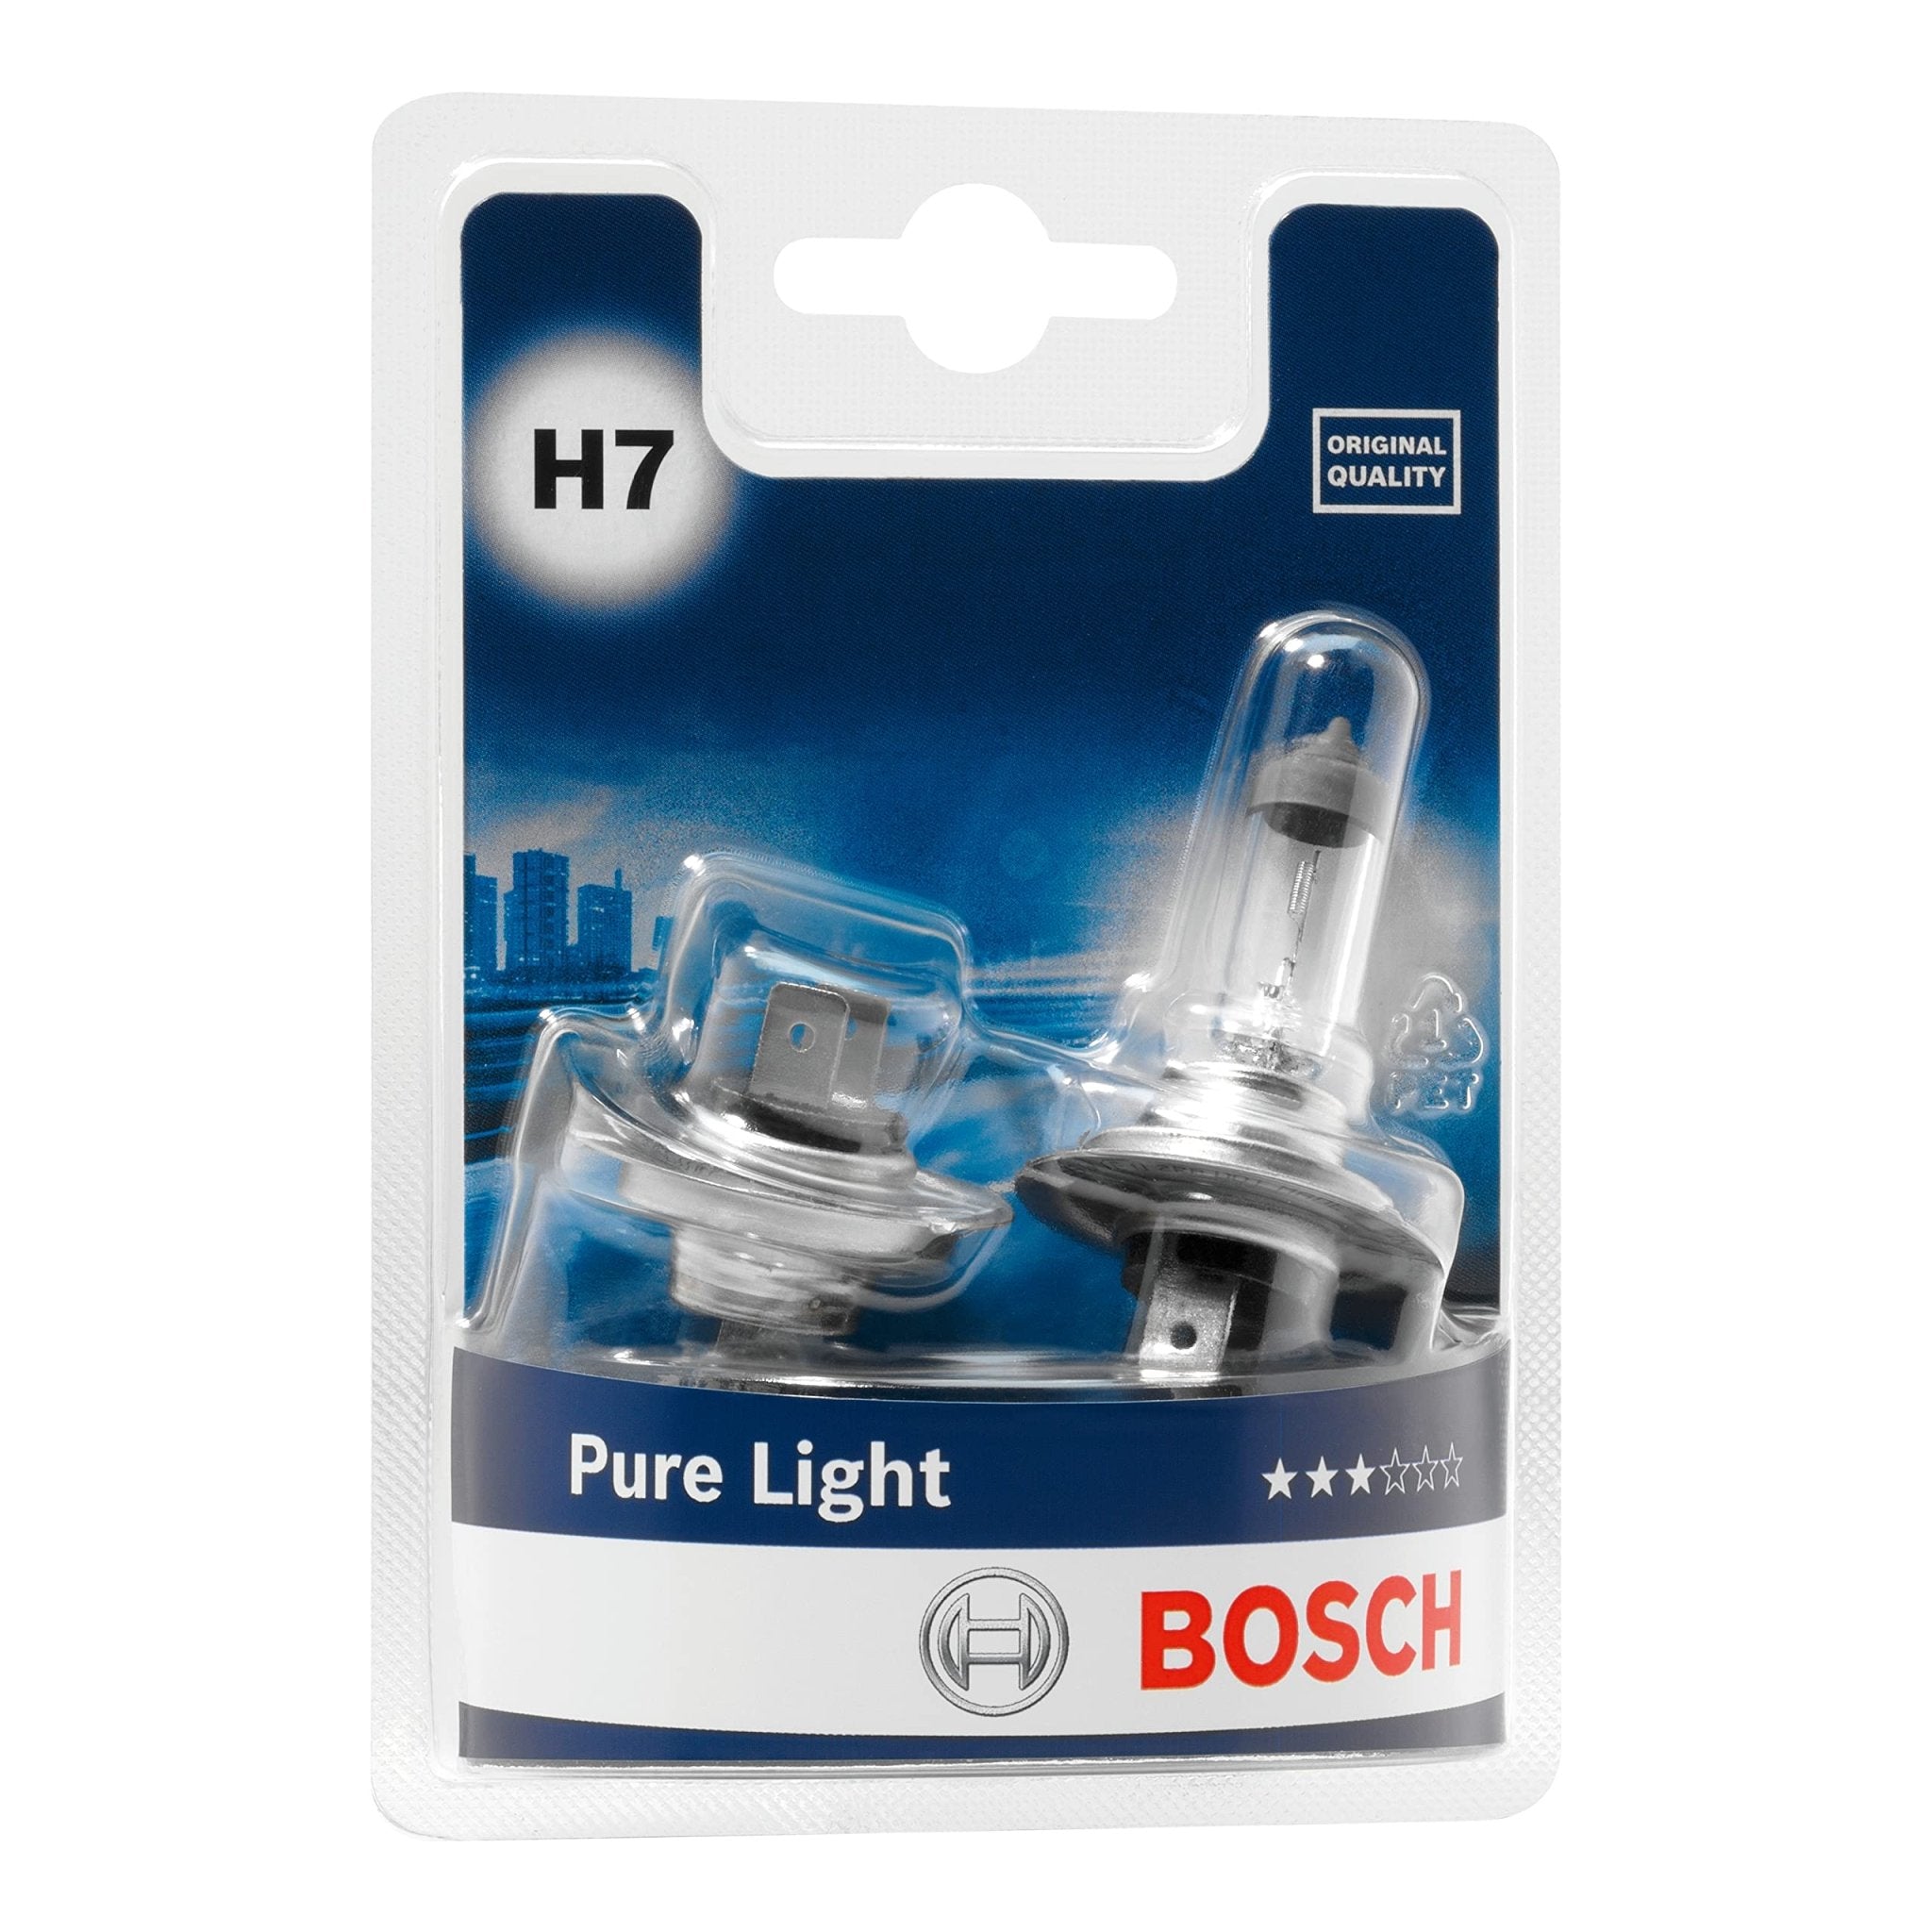 Bosch H7 (477) Pure Light Headlight Bulbs - 12 V 55 W PX26d - 2 Bulbs - Ammpoure Wellbeing